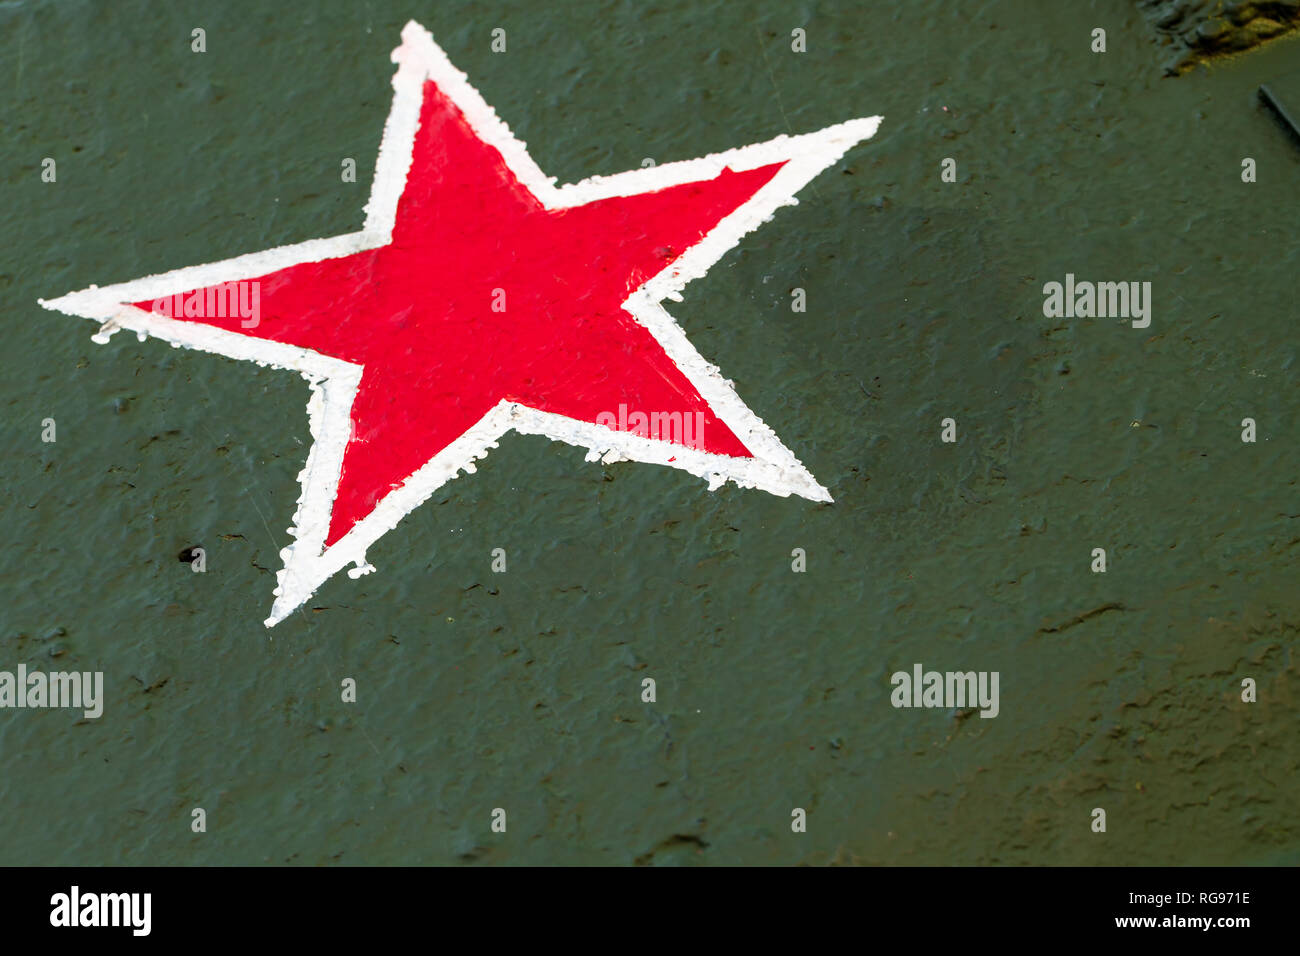 Étoile rouge sur vert plaque d'acier. Signe d'ouvriers et paysans soviétique de l'Armée rouge sur le corps du réservoir à partir de la Deuxième Guerre mondiale Banque D'Images